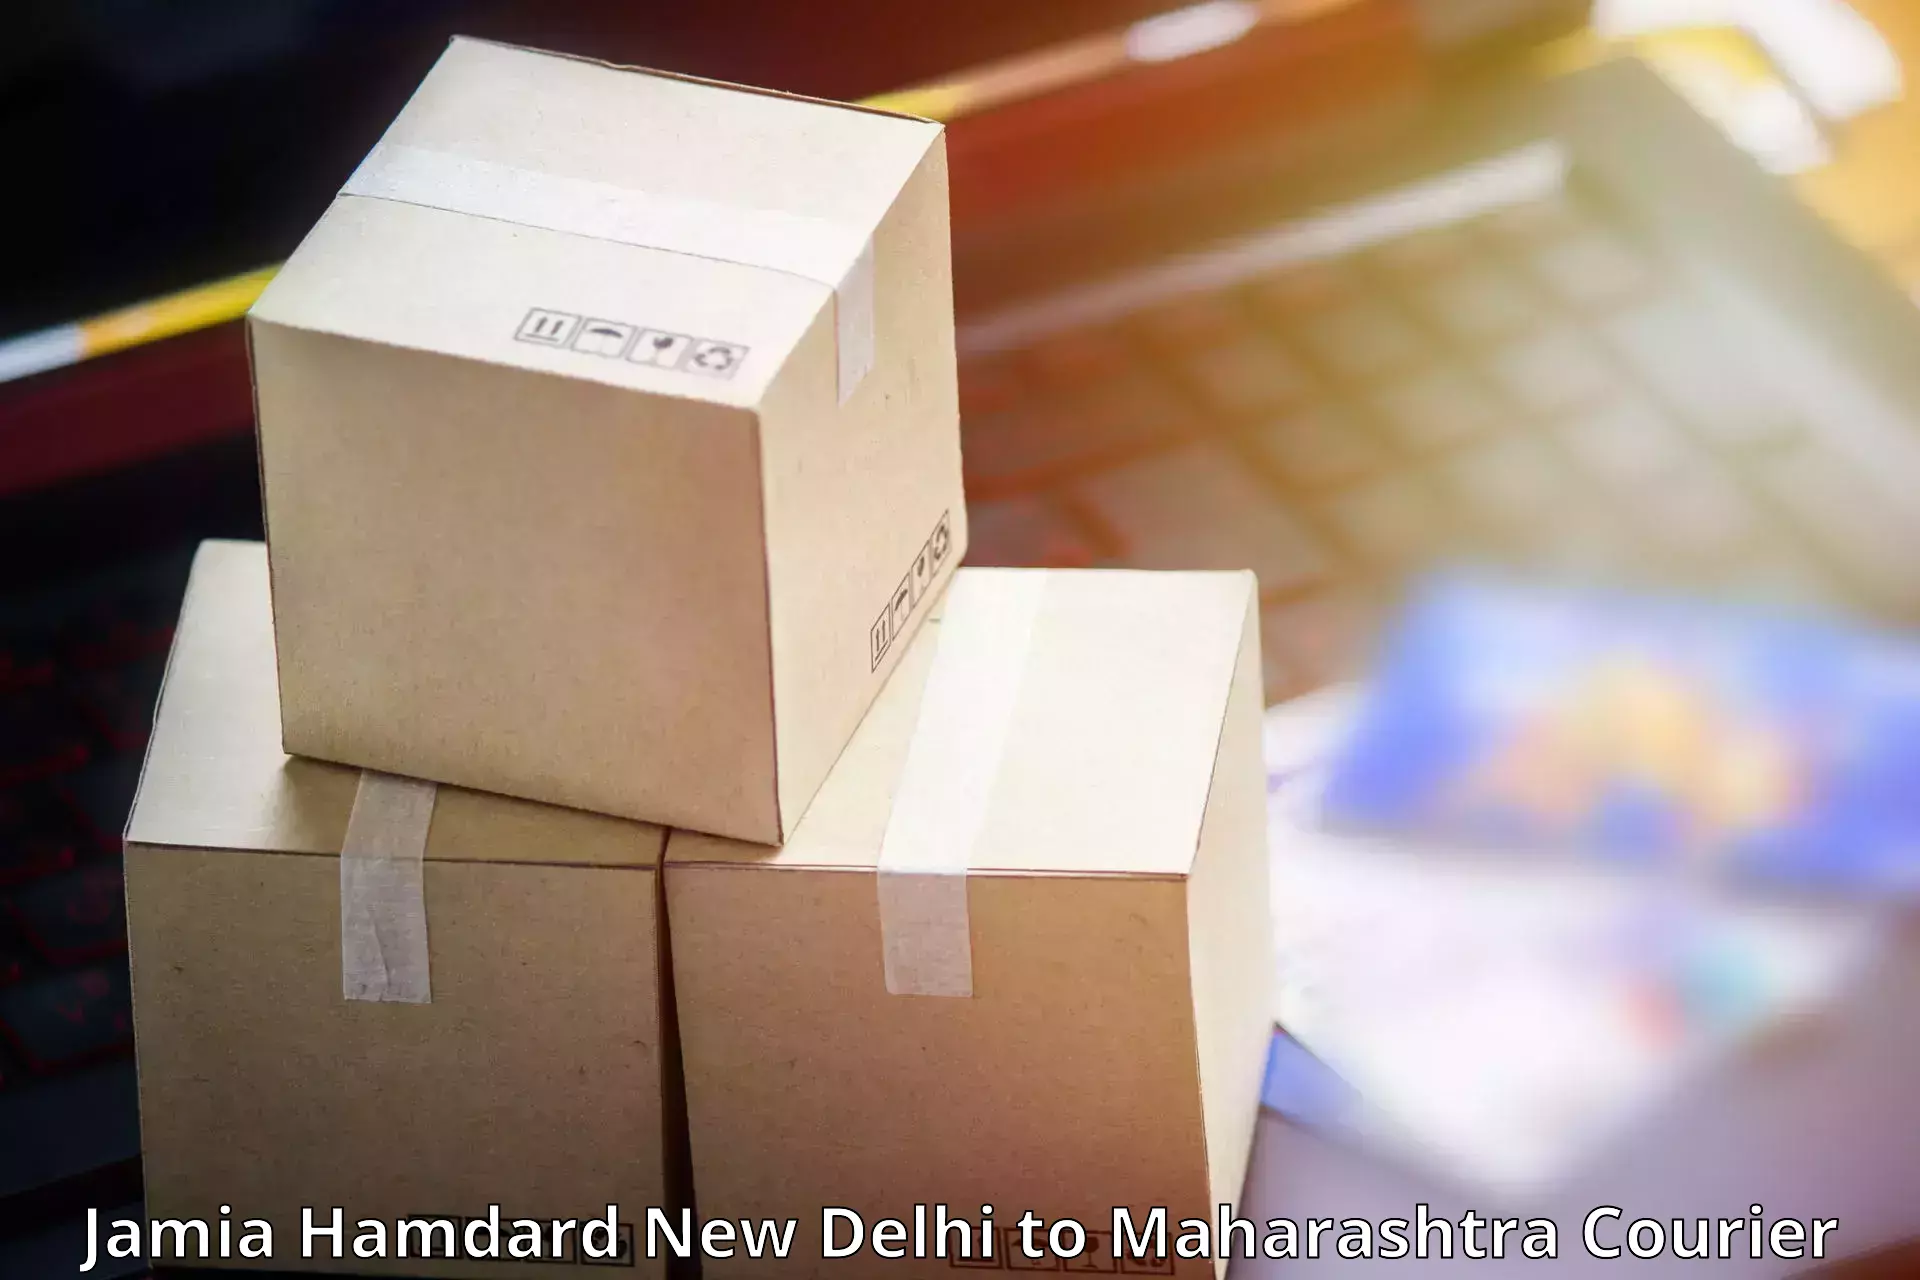 Heavy parcel delivery Jamia Hamdard New Delhi to Maharashtra